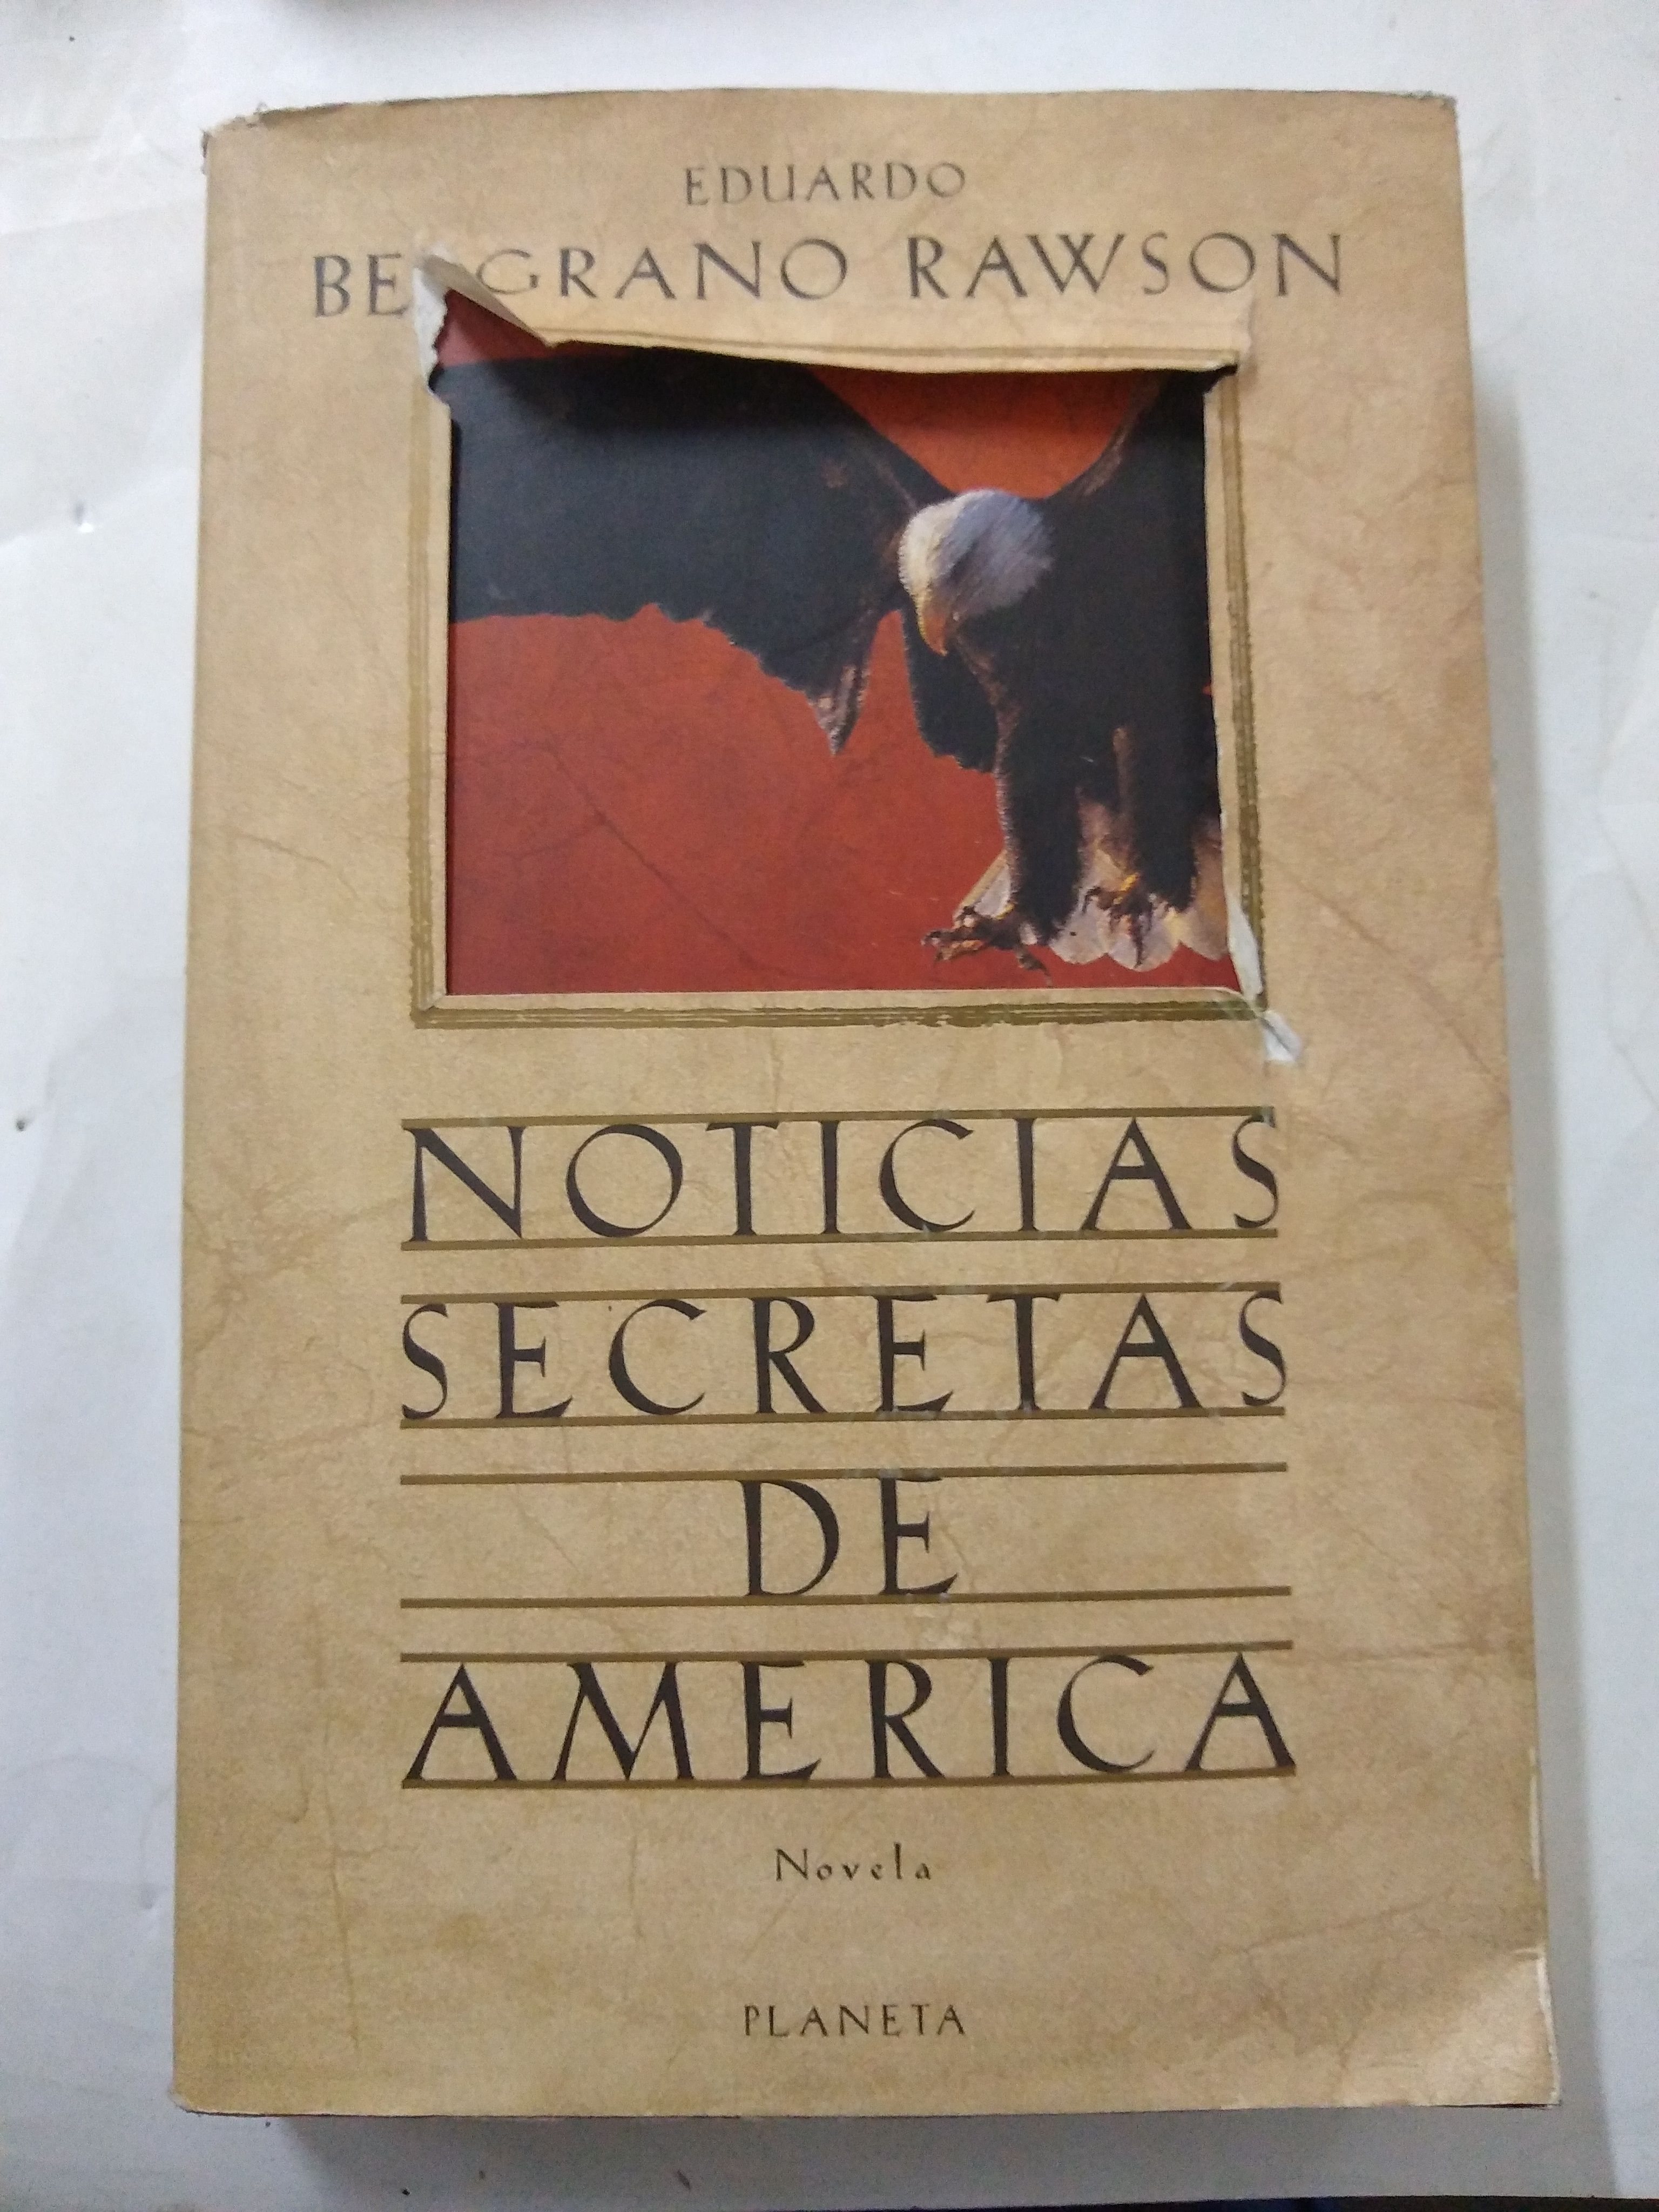 Noticias secretas de America - Belgrano Rawson